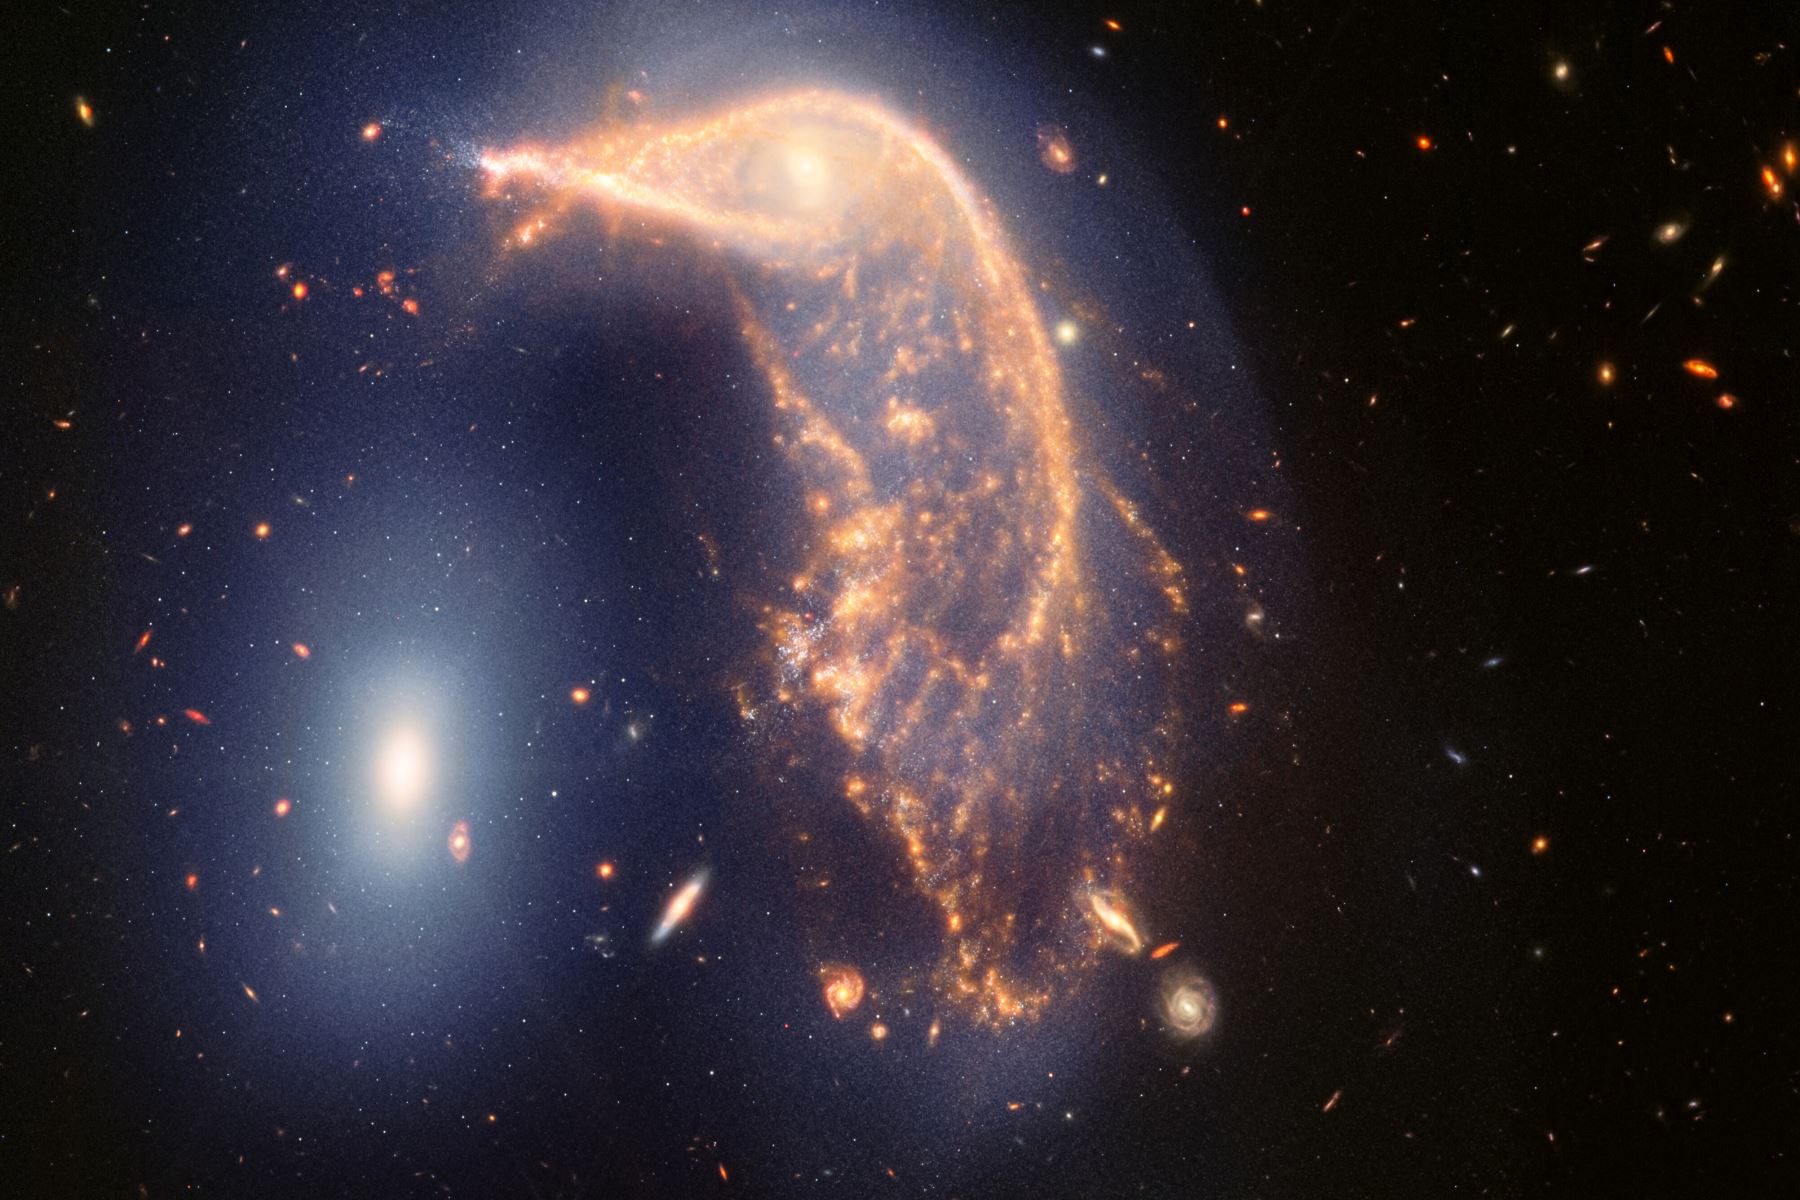 Celebrando dos años de ciencia, esta nueva imagen de Webb muestra dos galaxias: un pingüino (NGC 2936) custodiando un huevo (NGC 2937). Webb revela que están en un abrazo cósmico, unidos por una neblina azul de estrellas y gas. Foto: @NASAWebb